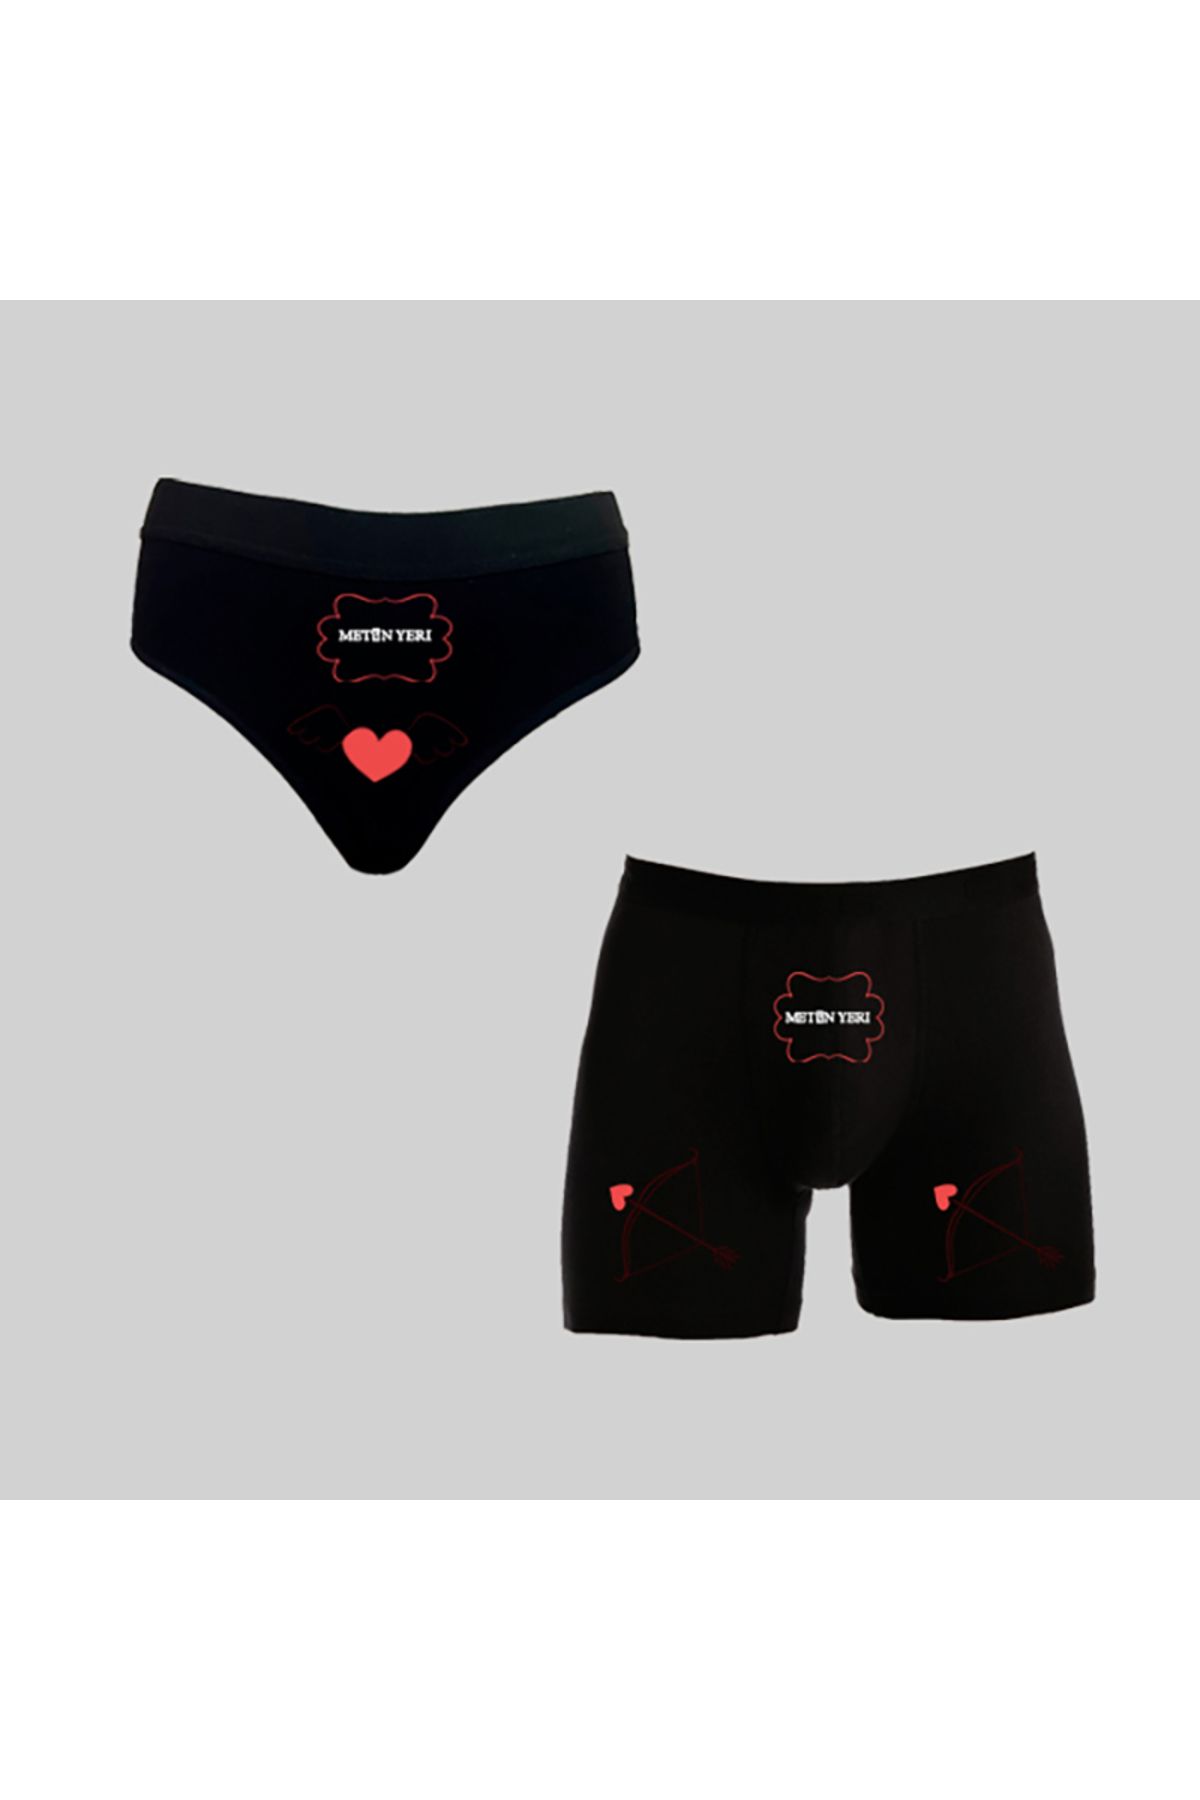 TexKid Kutulu Kişiye Özel Melek Kalp Yay Tasarımlı Kadın Külot ve Erkek Boxer İkili Set